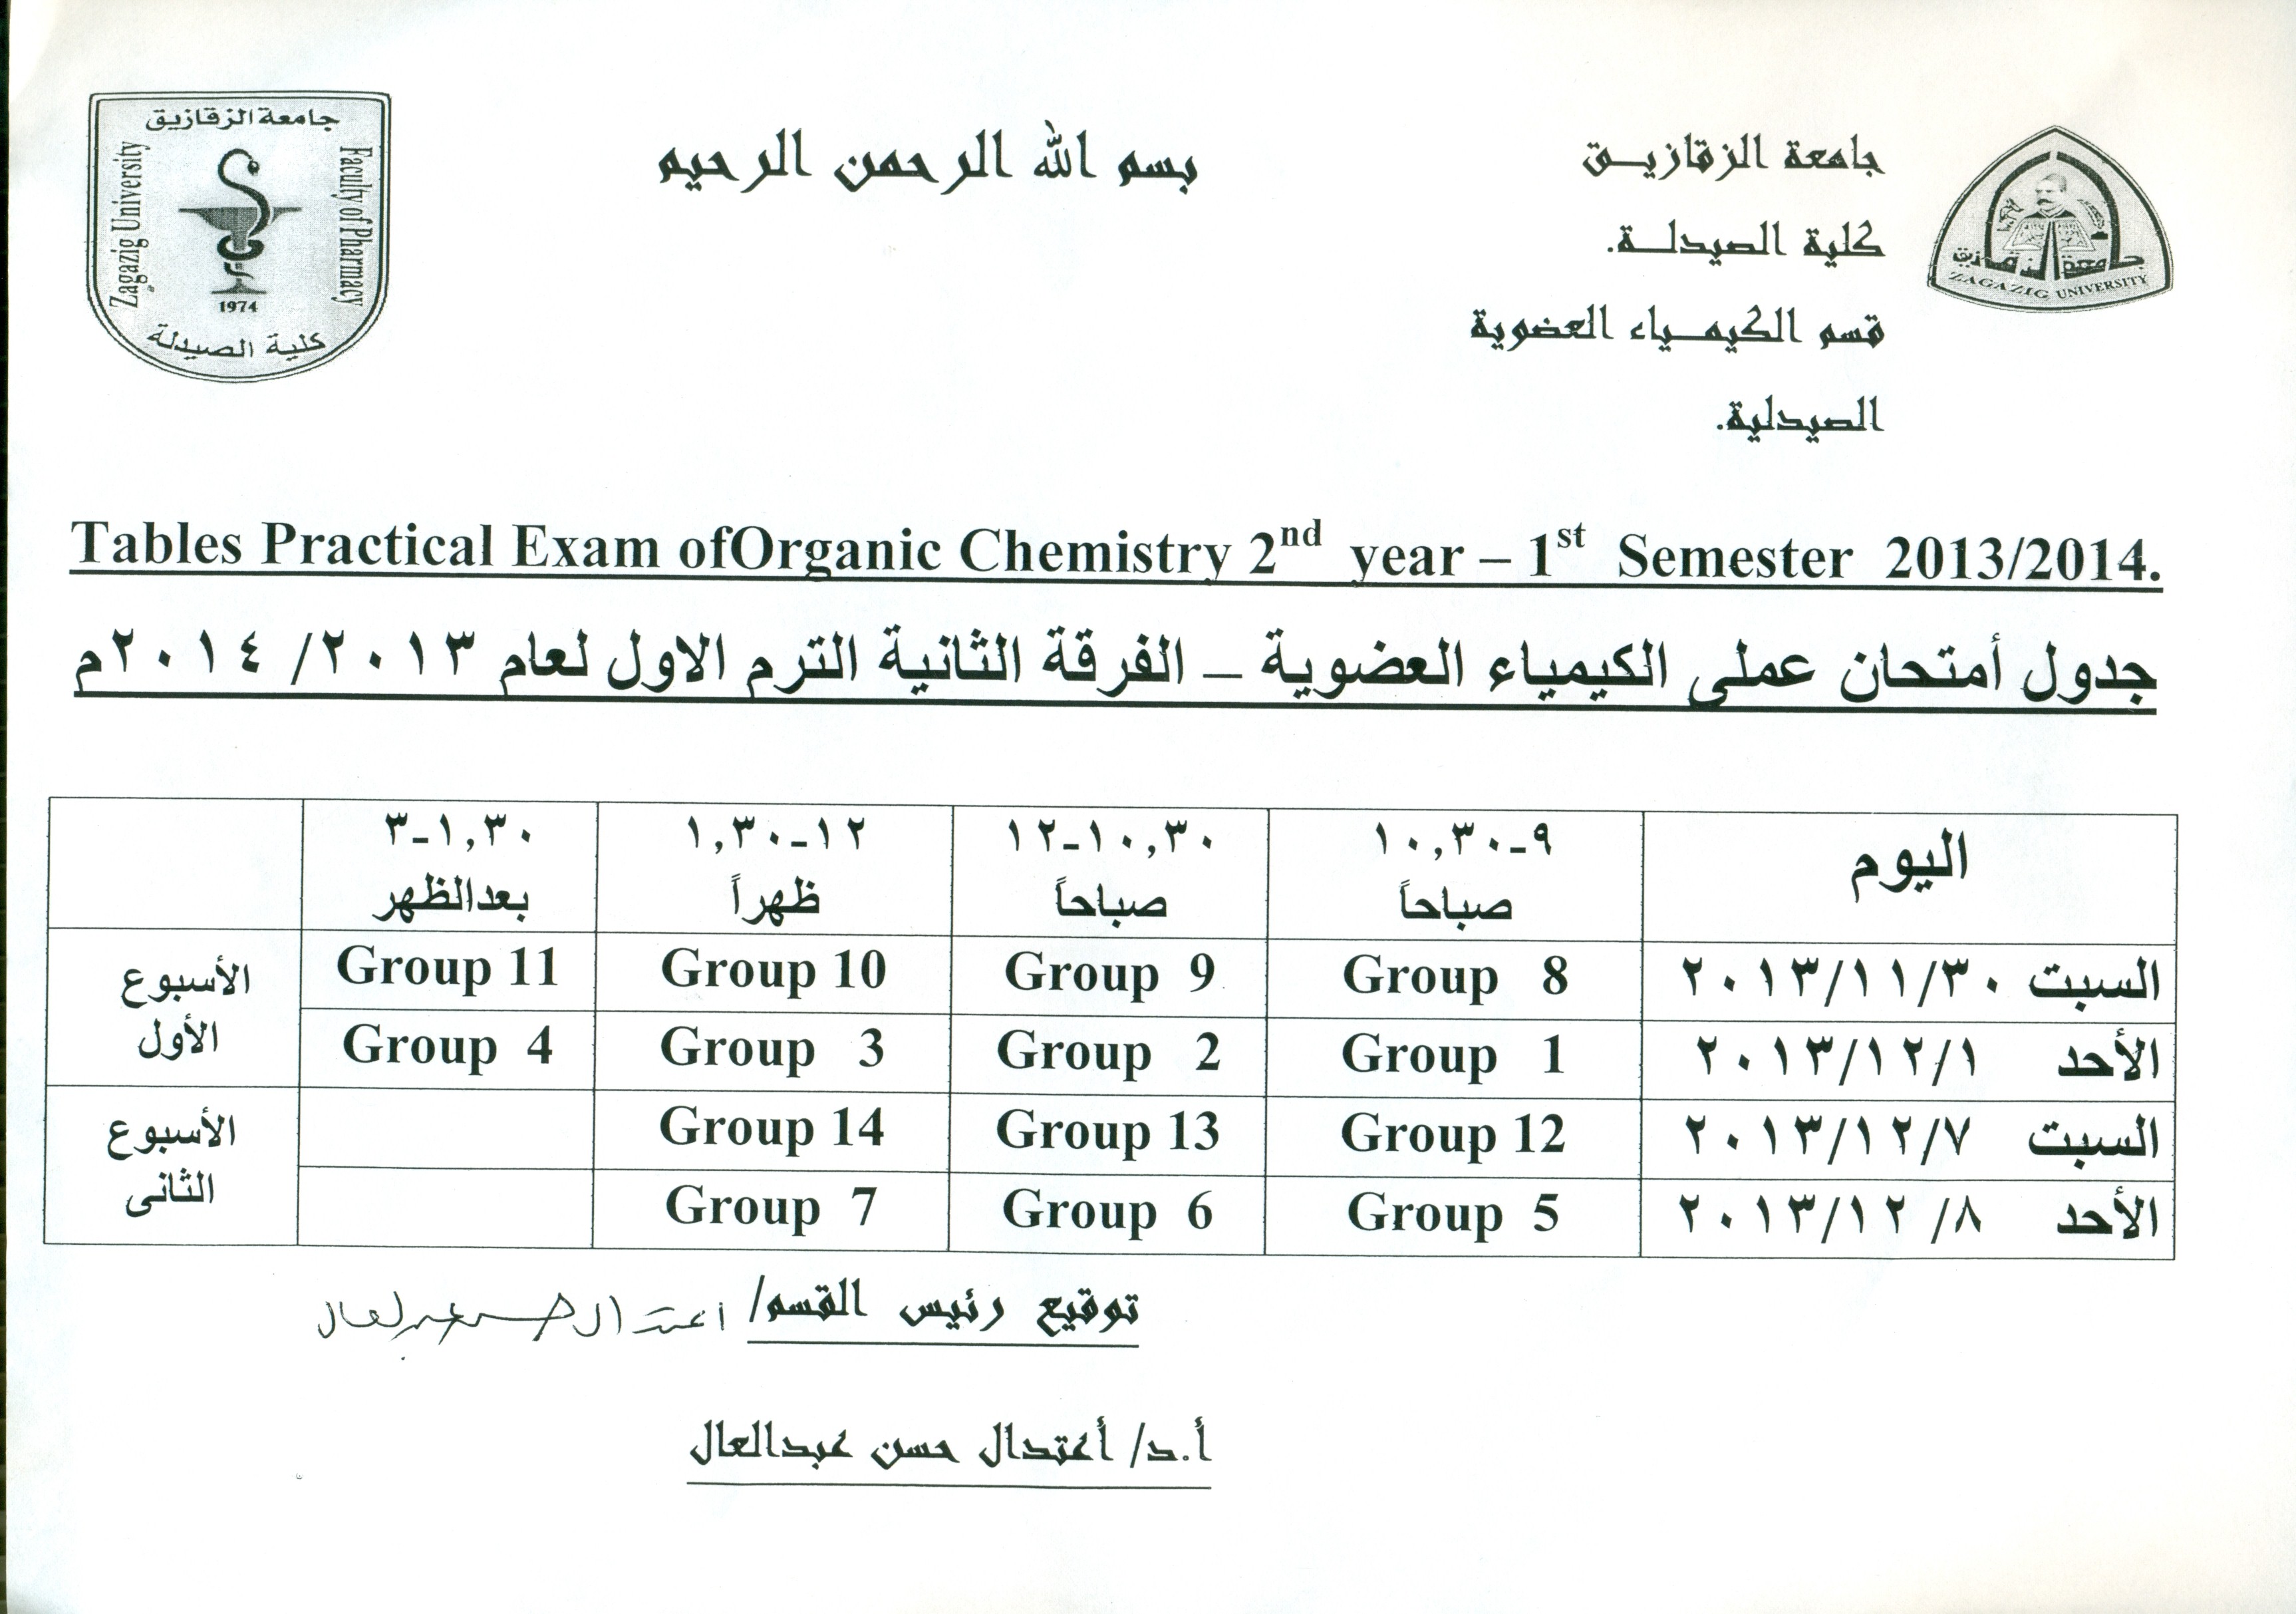 جدول إمتحان عملى الكيمياء العضوية _ الفرقة الثانية الترم الاول لعام 2013/2014